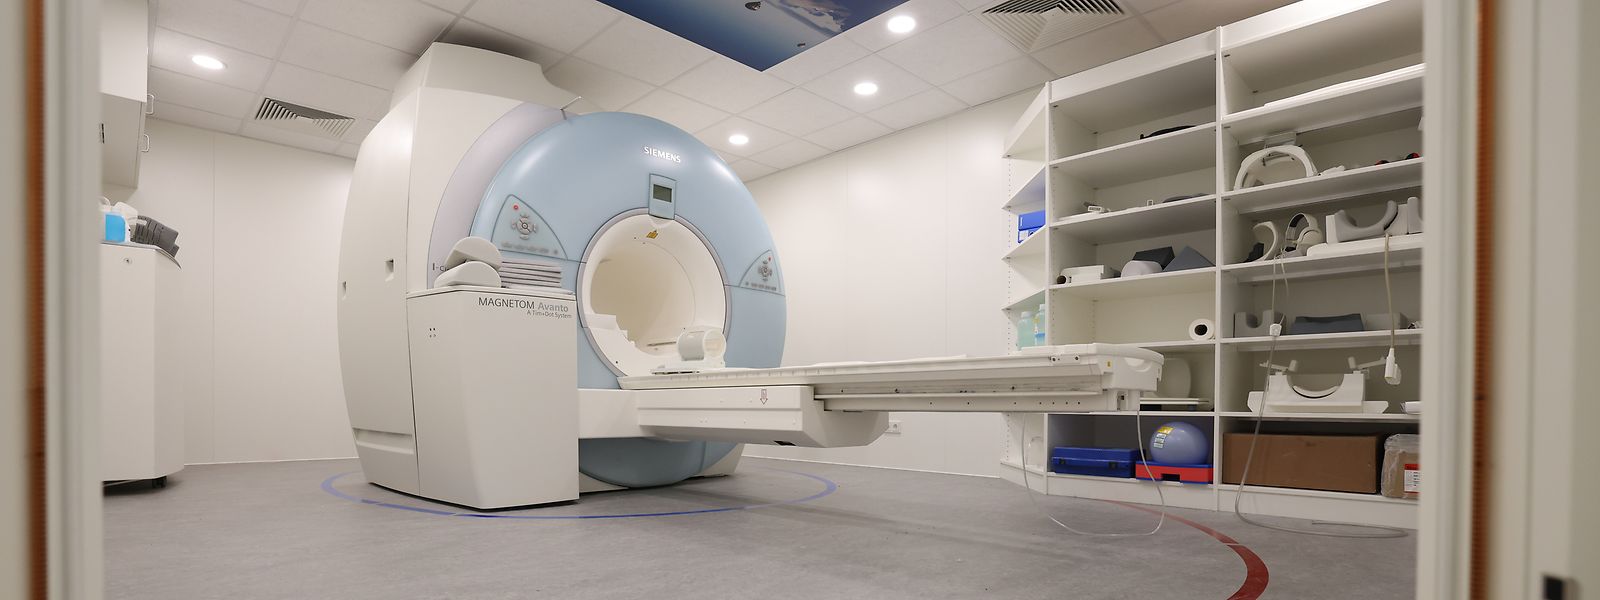 Au centre du débat, le service de radiologie avec IRM au Potaschbierg. Le patient a tout à gagner dans un système de santé qui offre de façon adéquate une médecine de proximité extrahospitalière, soulignent les auteurs.  